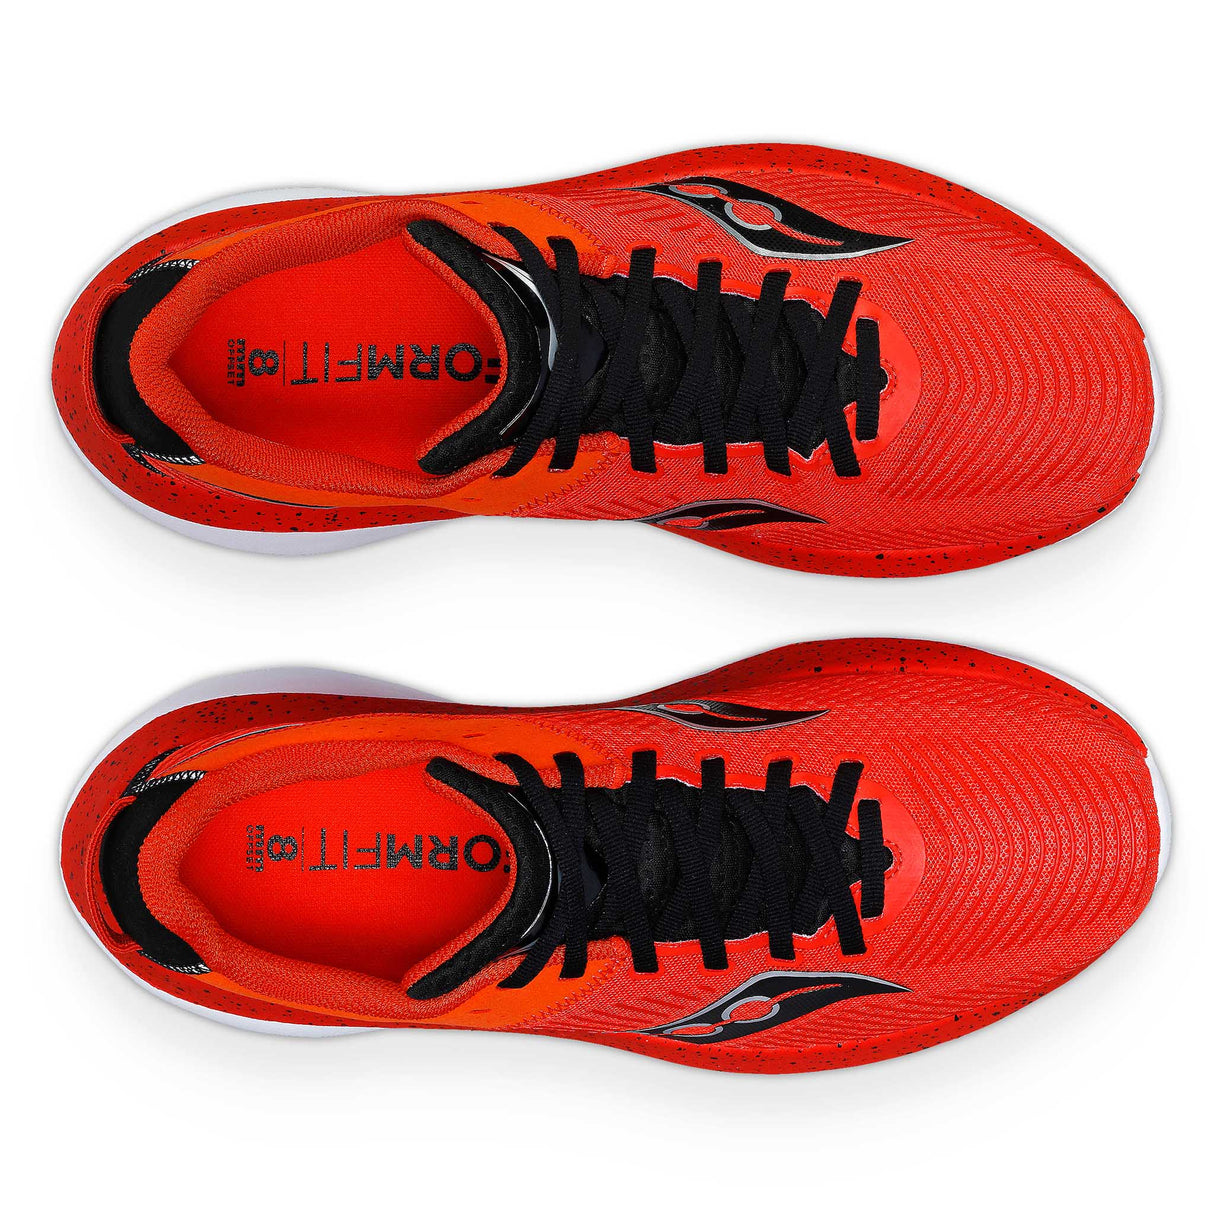 Saucony Kinvara Pro chaussures de course à pied homme empeigne- infrared / black